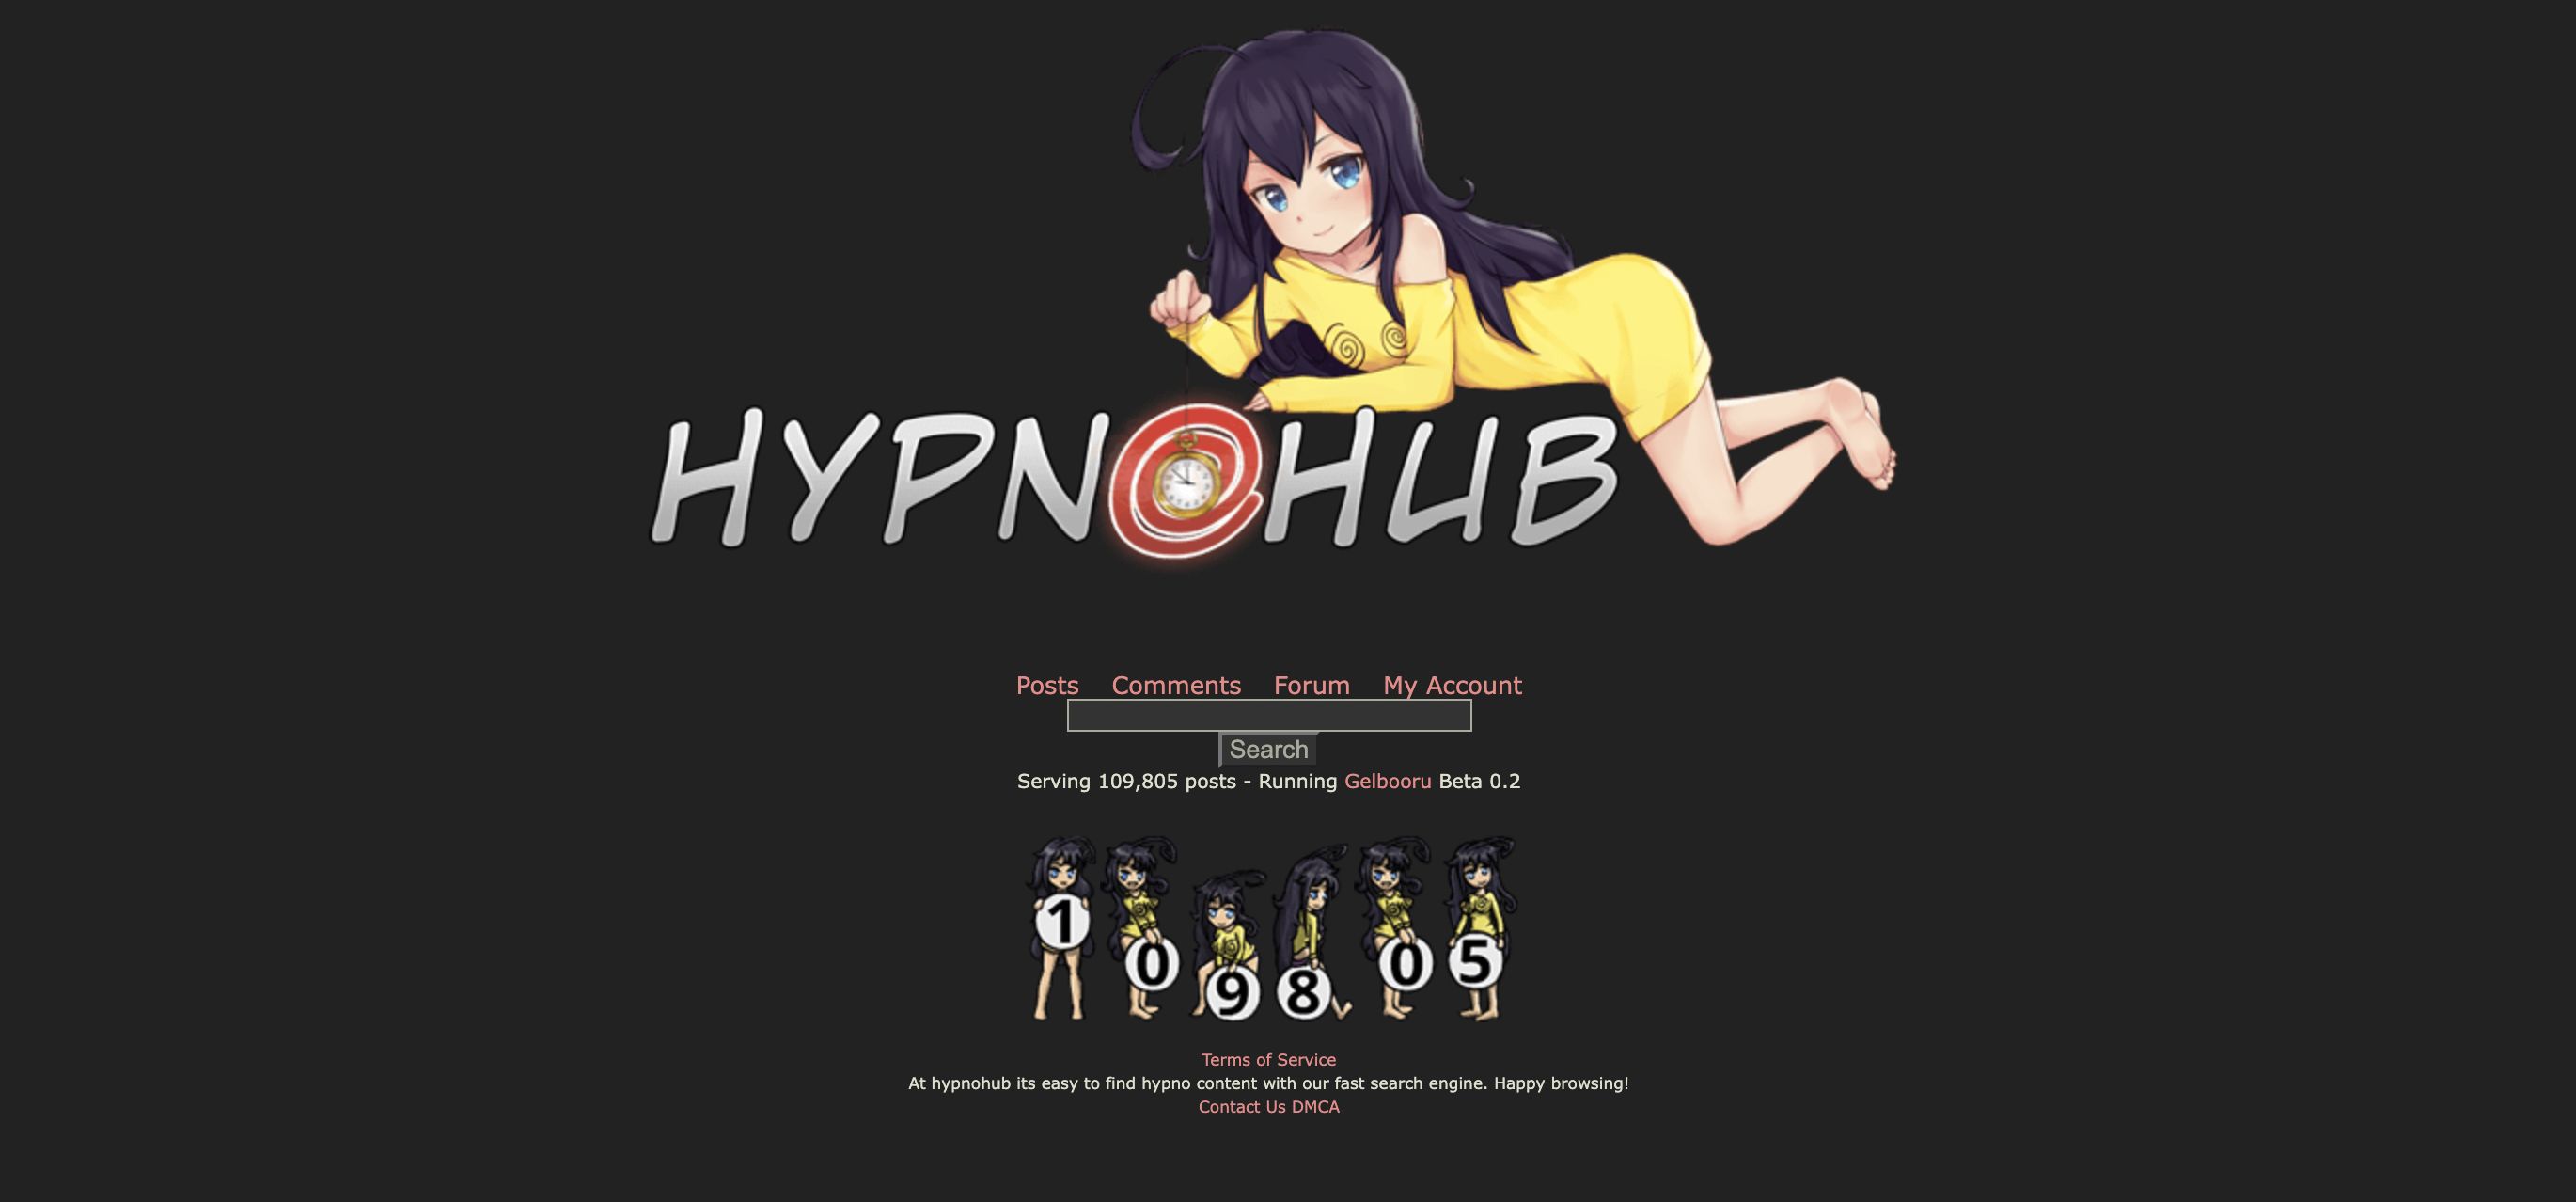 Hypnohub hypnotic